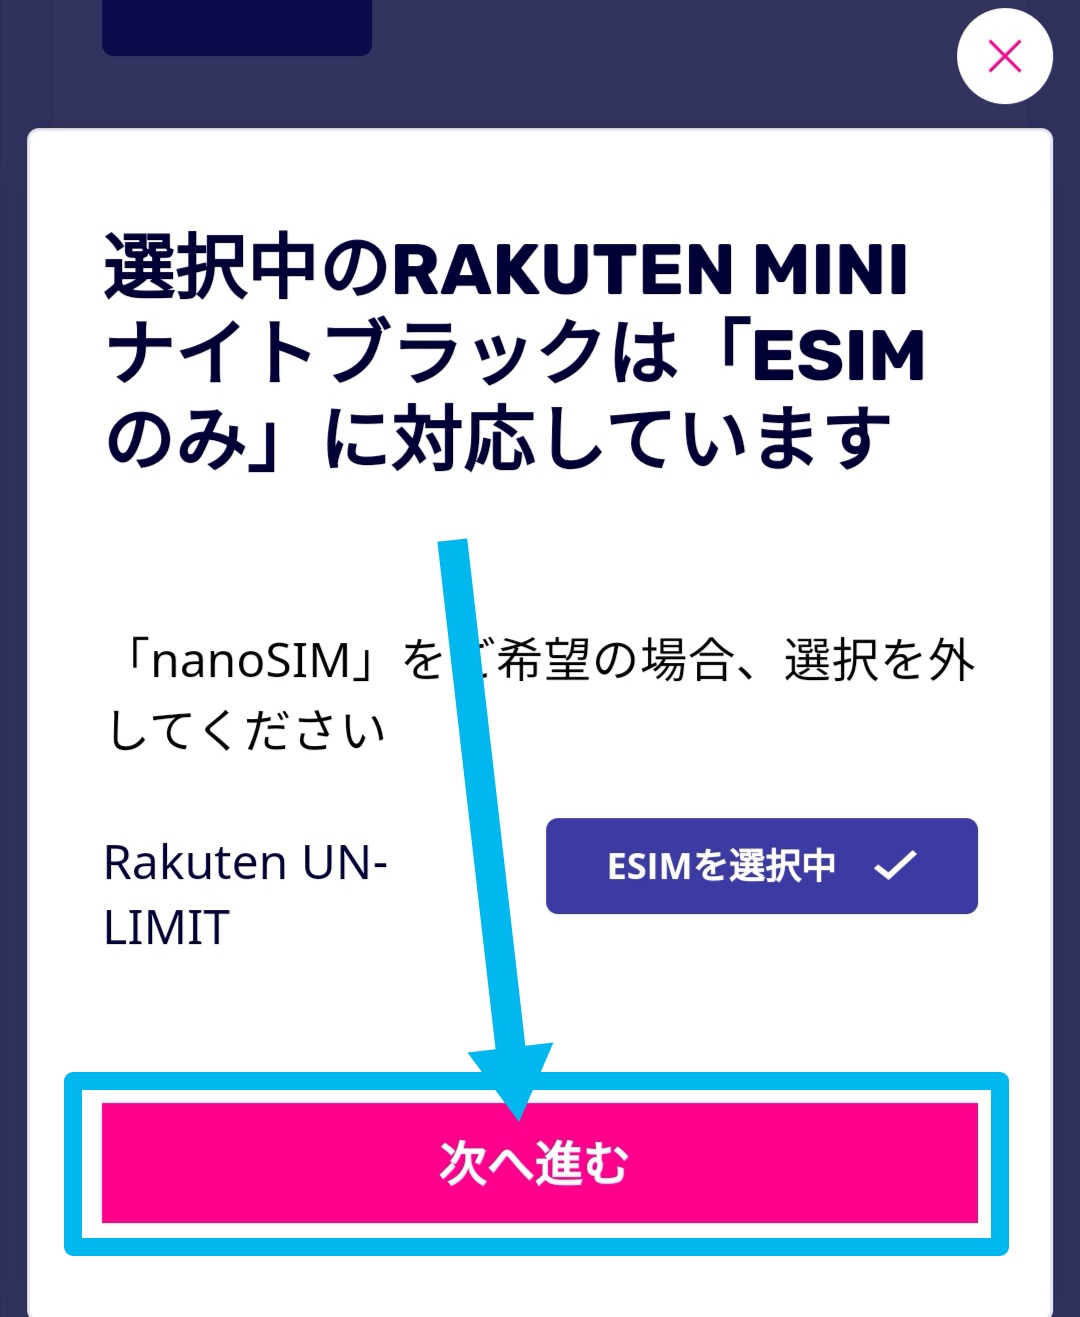 Rakuten MiniはeSIMに対応